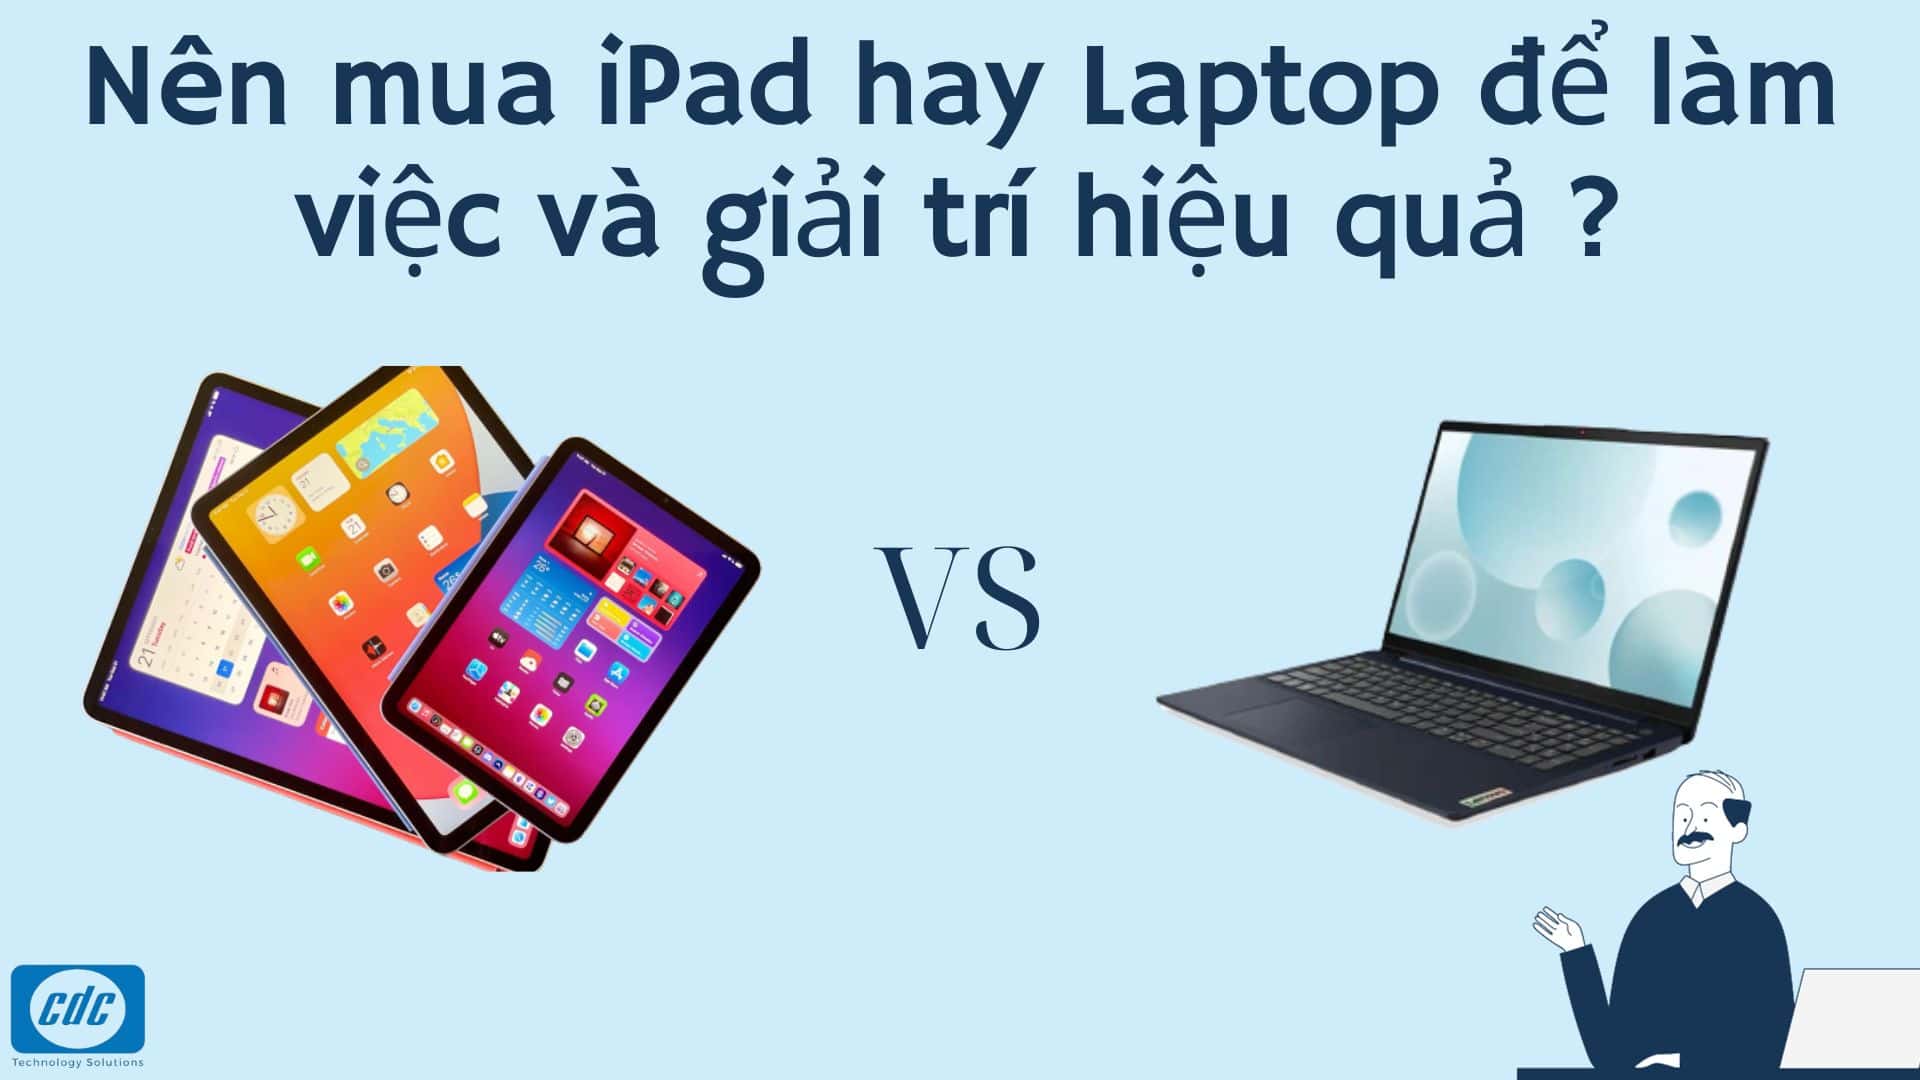 Nên mua iPad hay Laptop để làm việc và giải trí hiệu quả ?